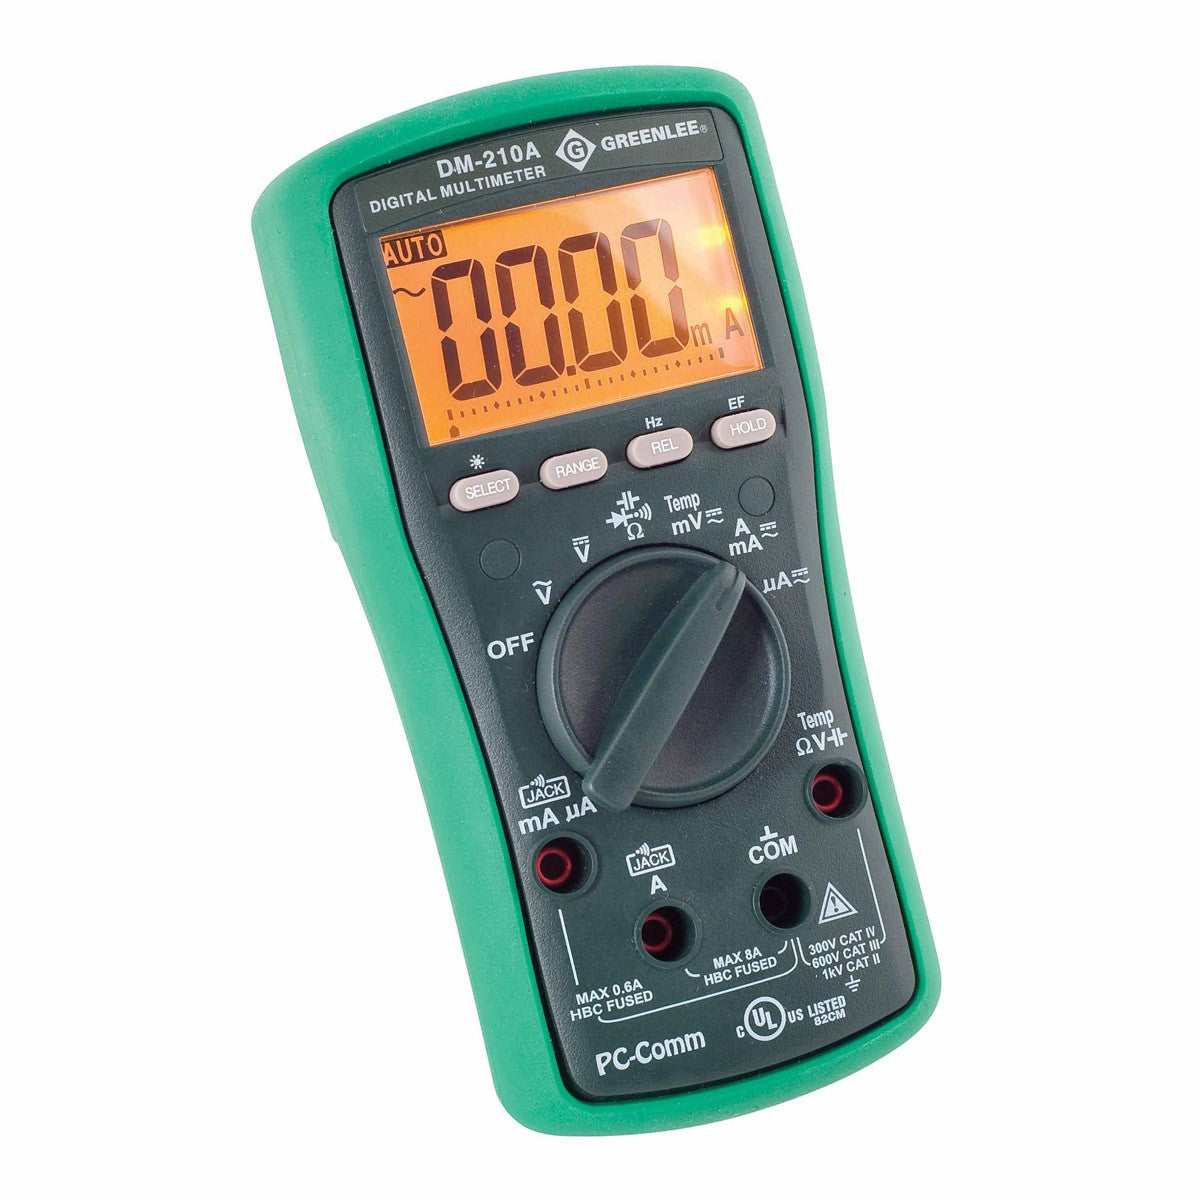 Greenlee DM-210A Digital Multimeter